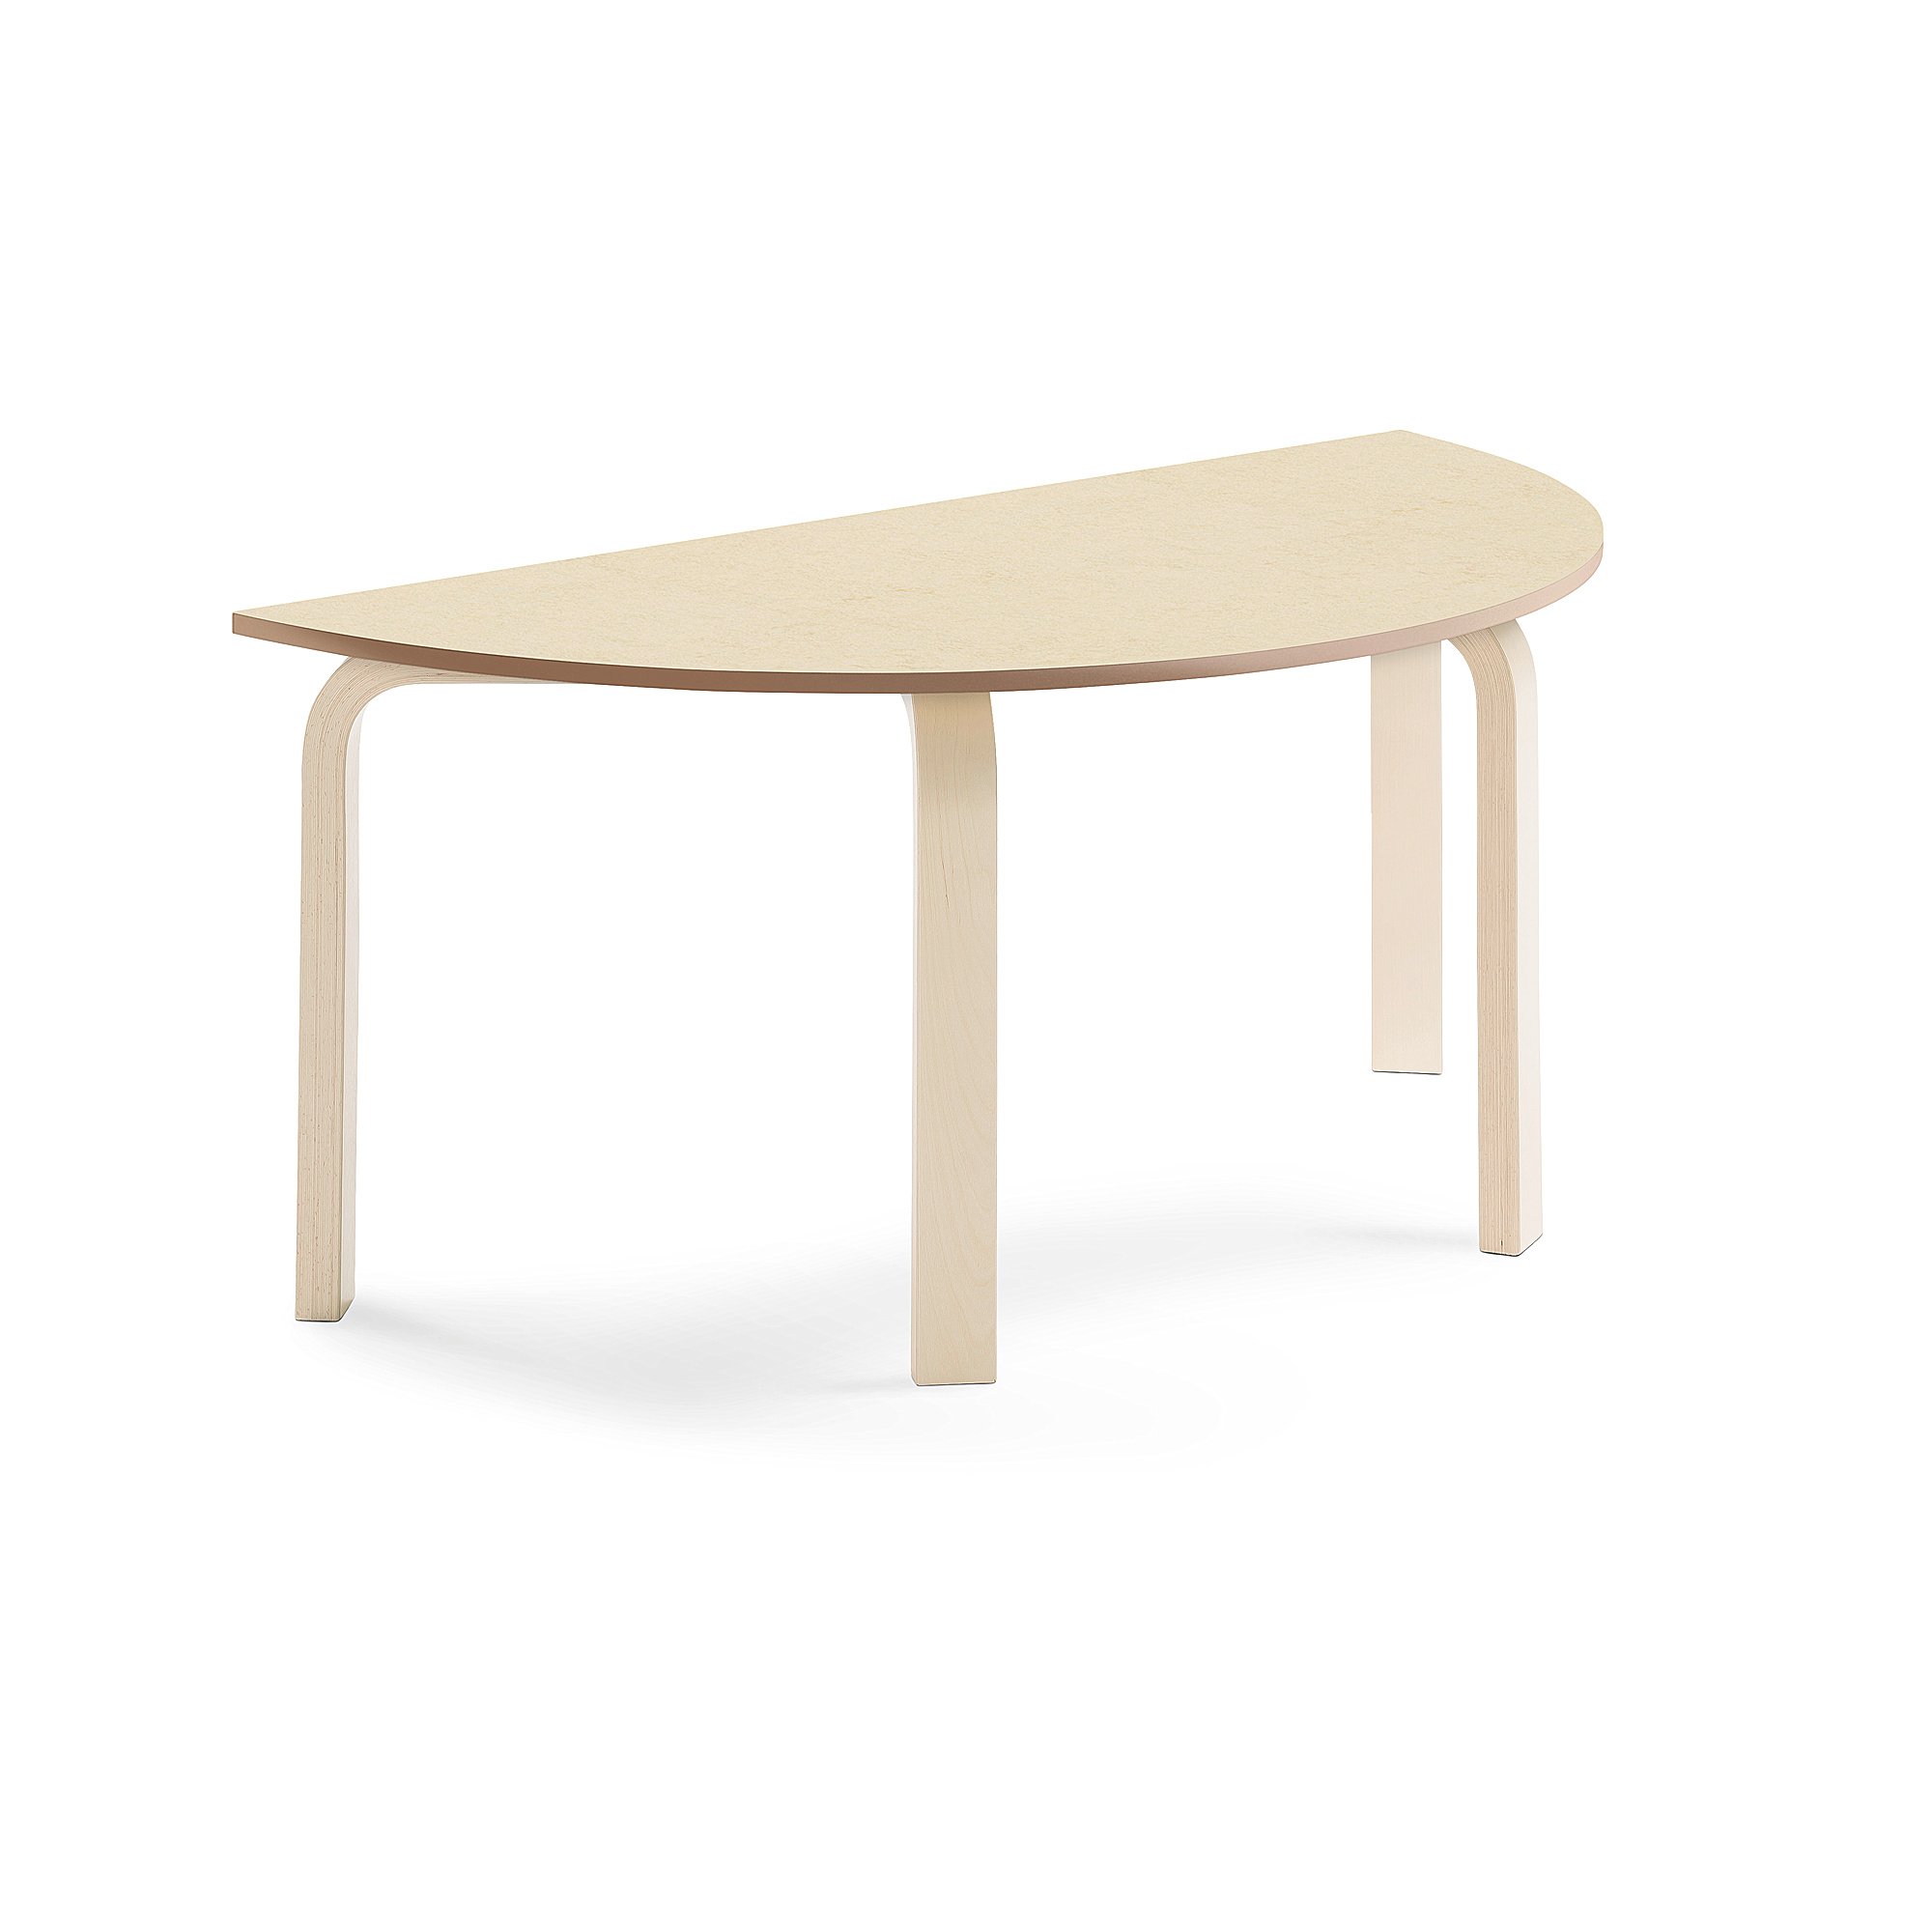 Stůl ELTON, půlkruh, 1200x600x530 mm, bříza, akustické linoleum, béžová